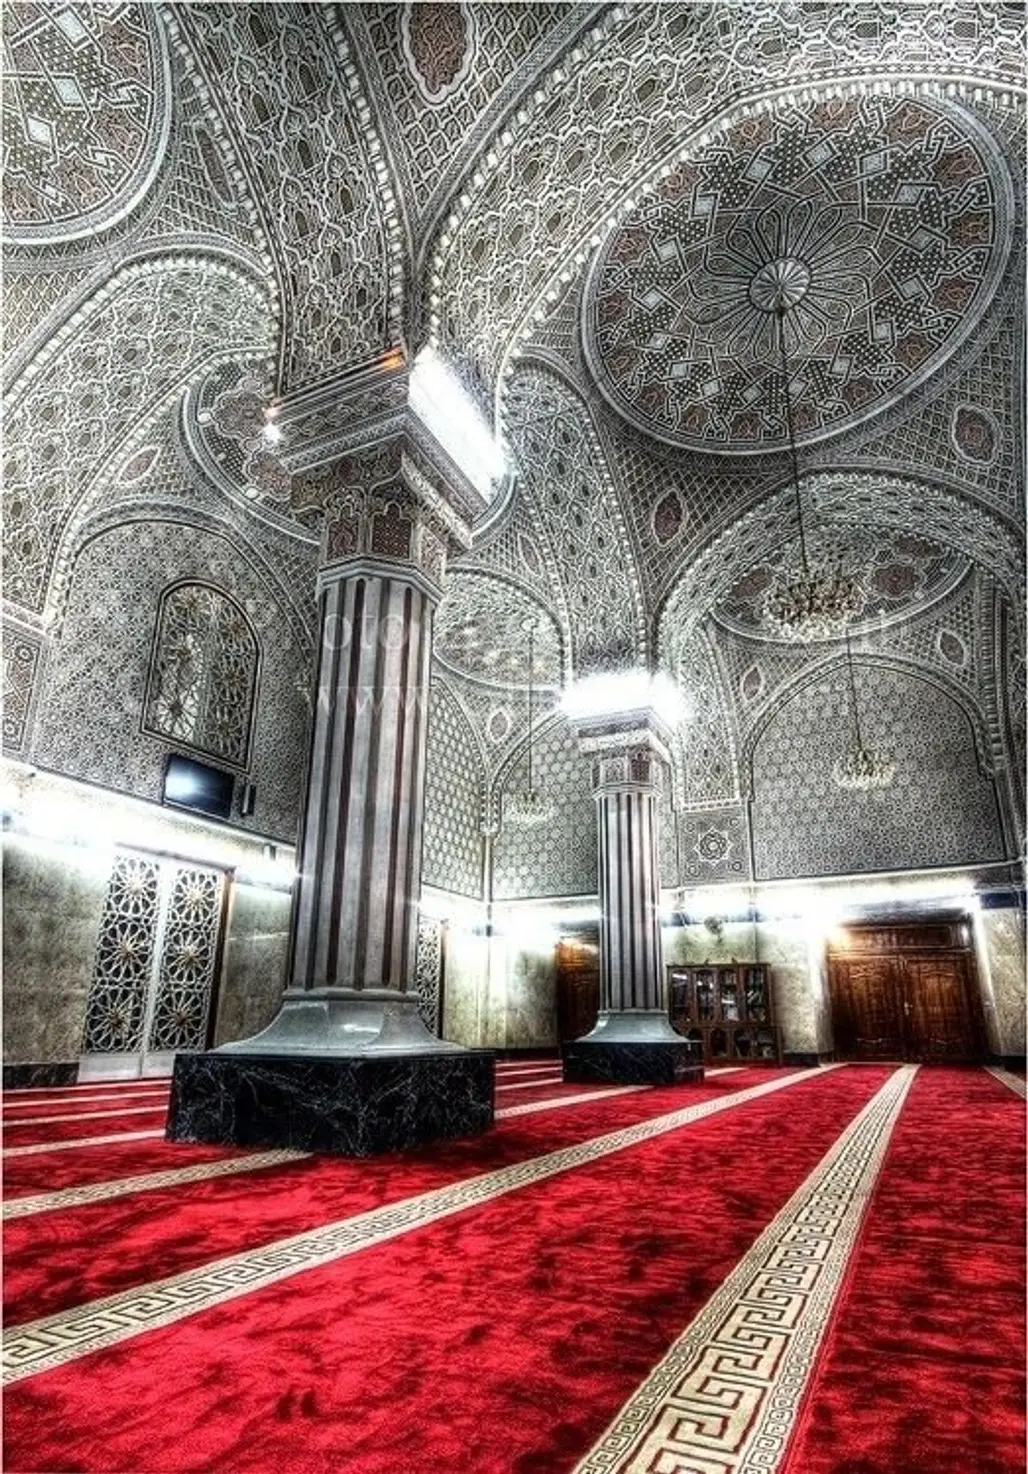 Abu Hanifa Mosque, Baghdad, Iraq